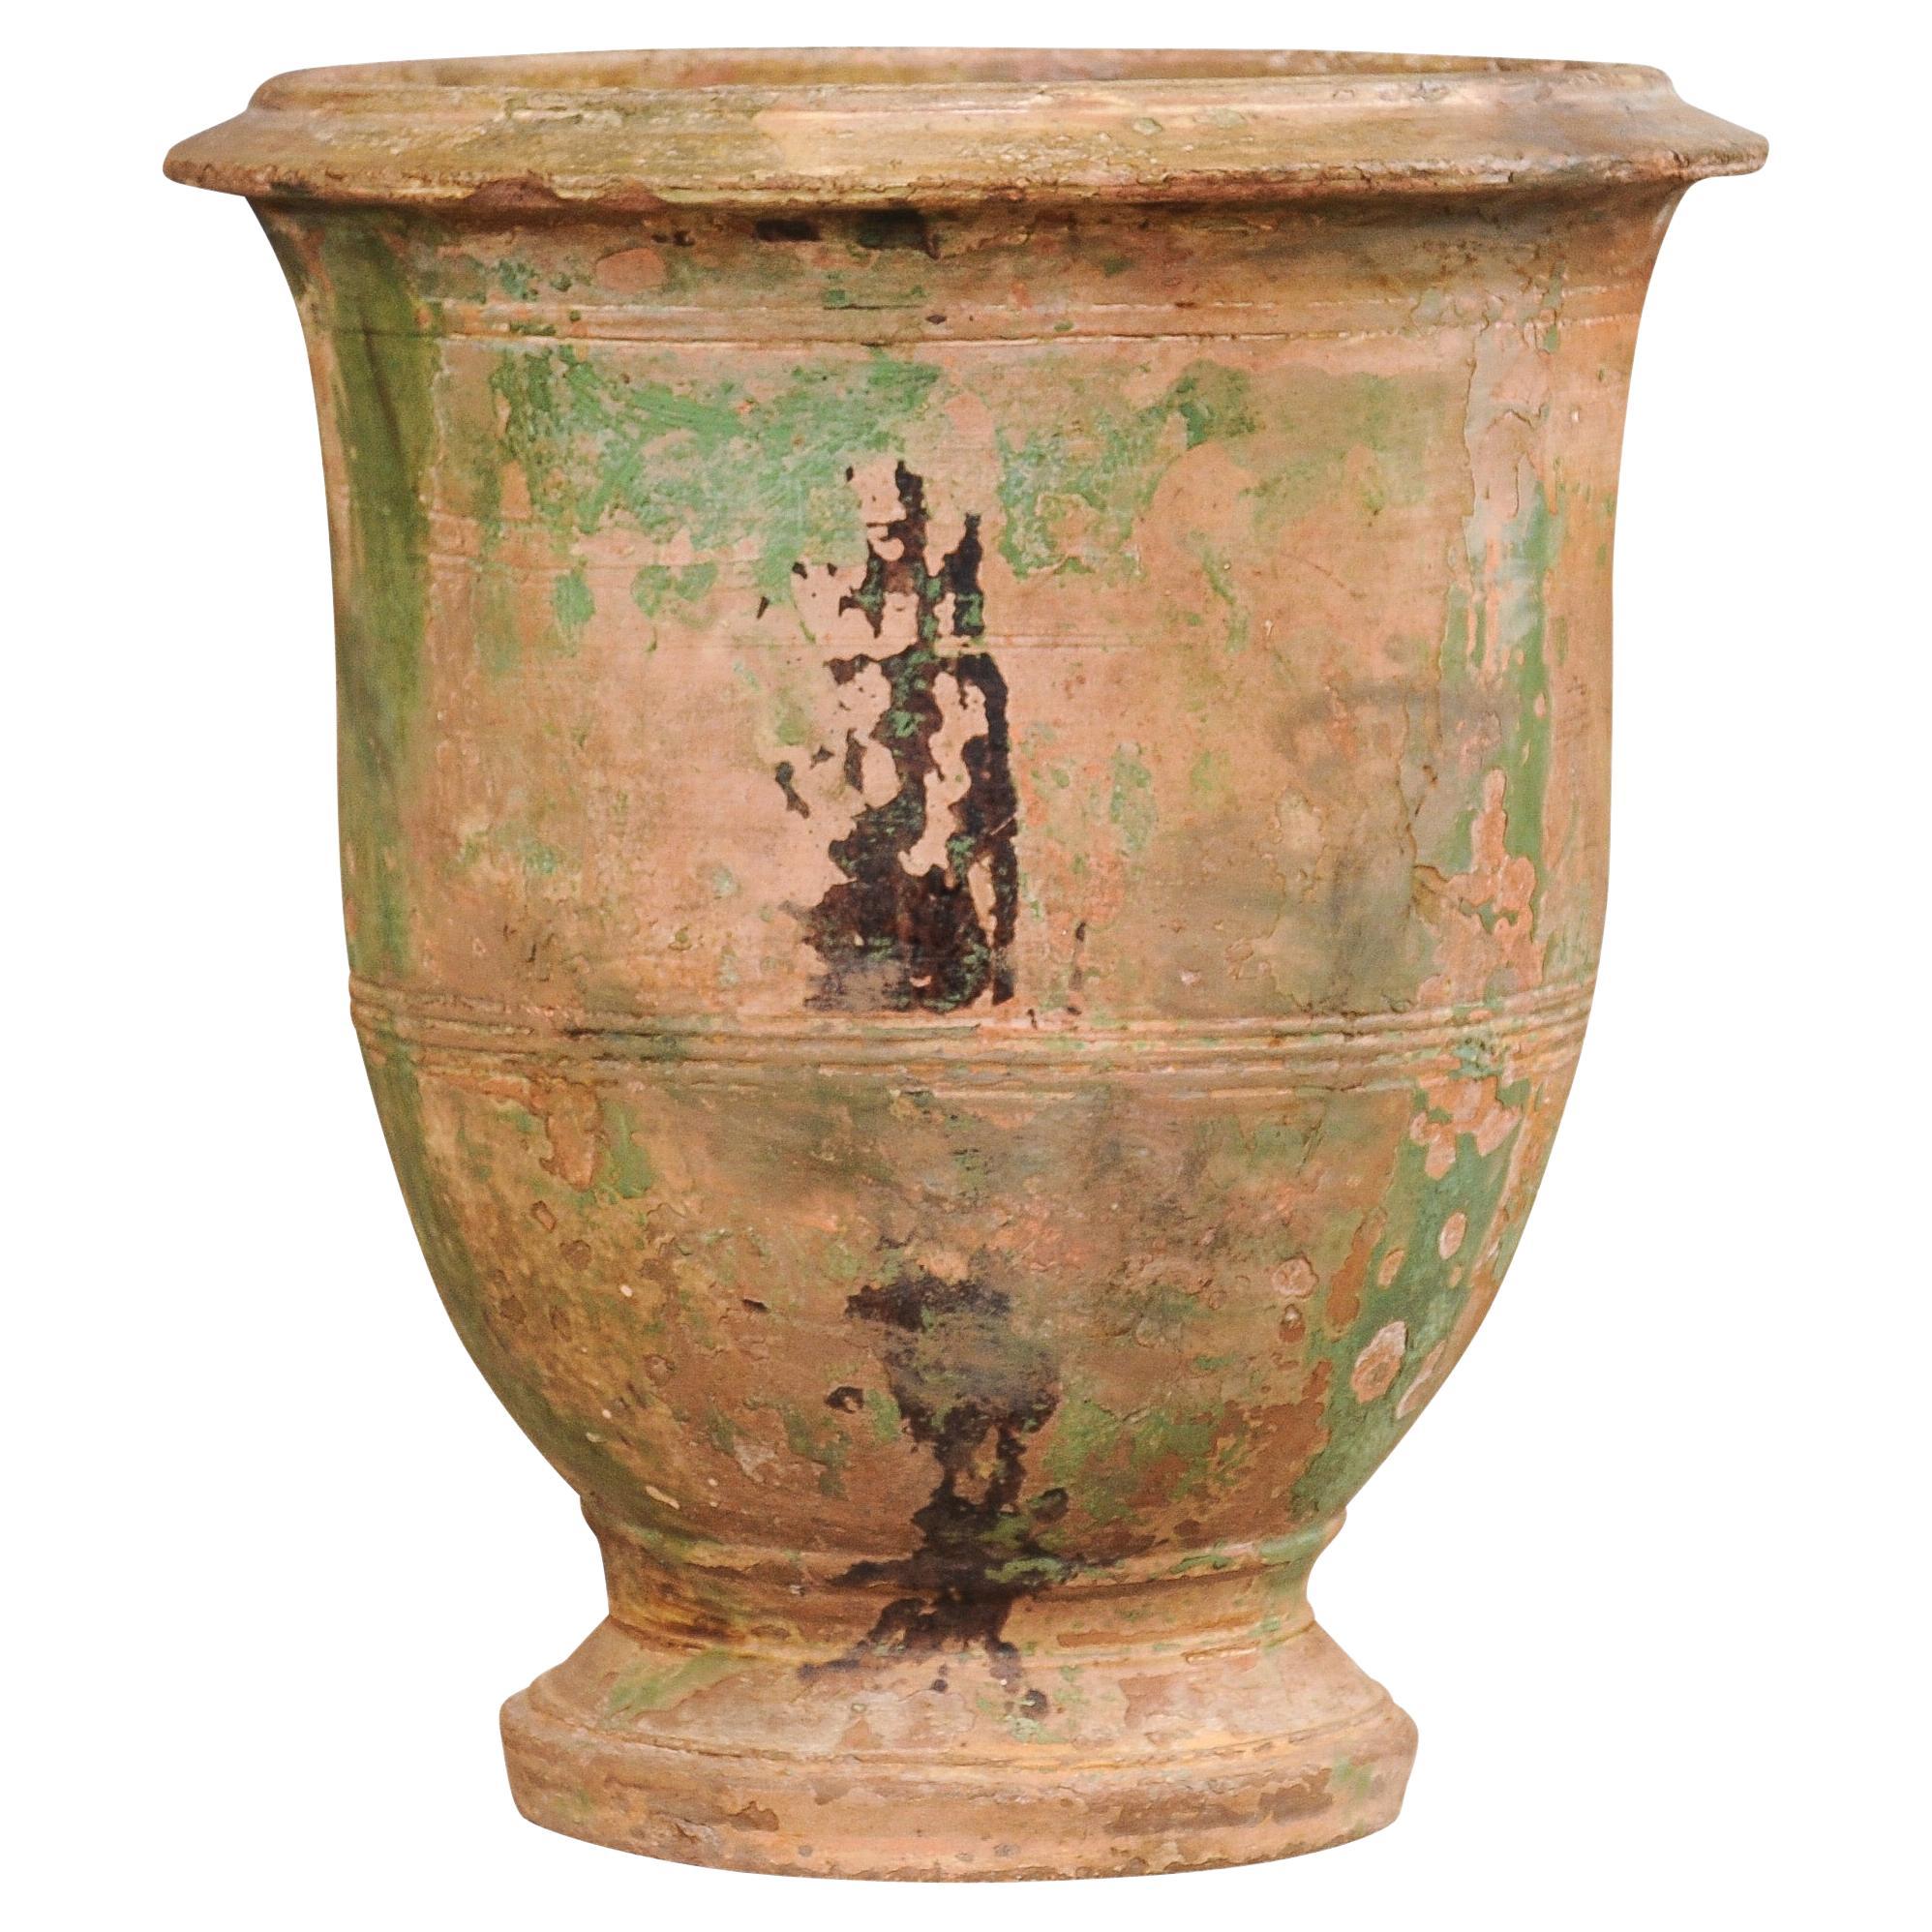 Vase d'Anduze de style provençal français du début du 19e siècle avec des touches de vert et de Brown